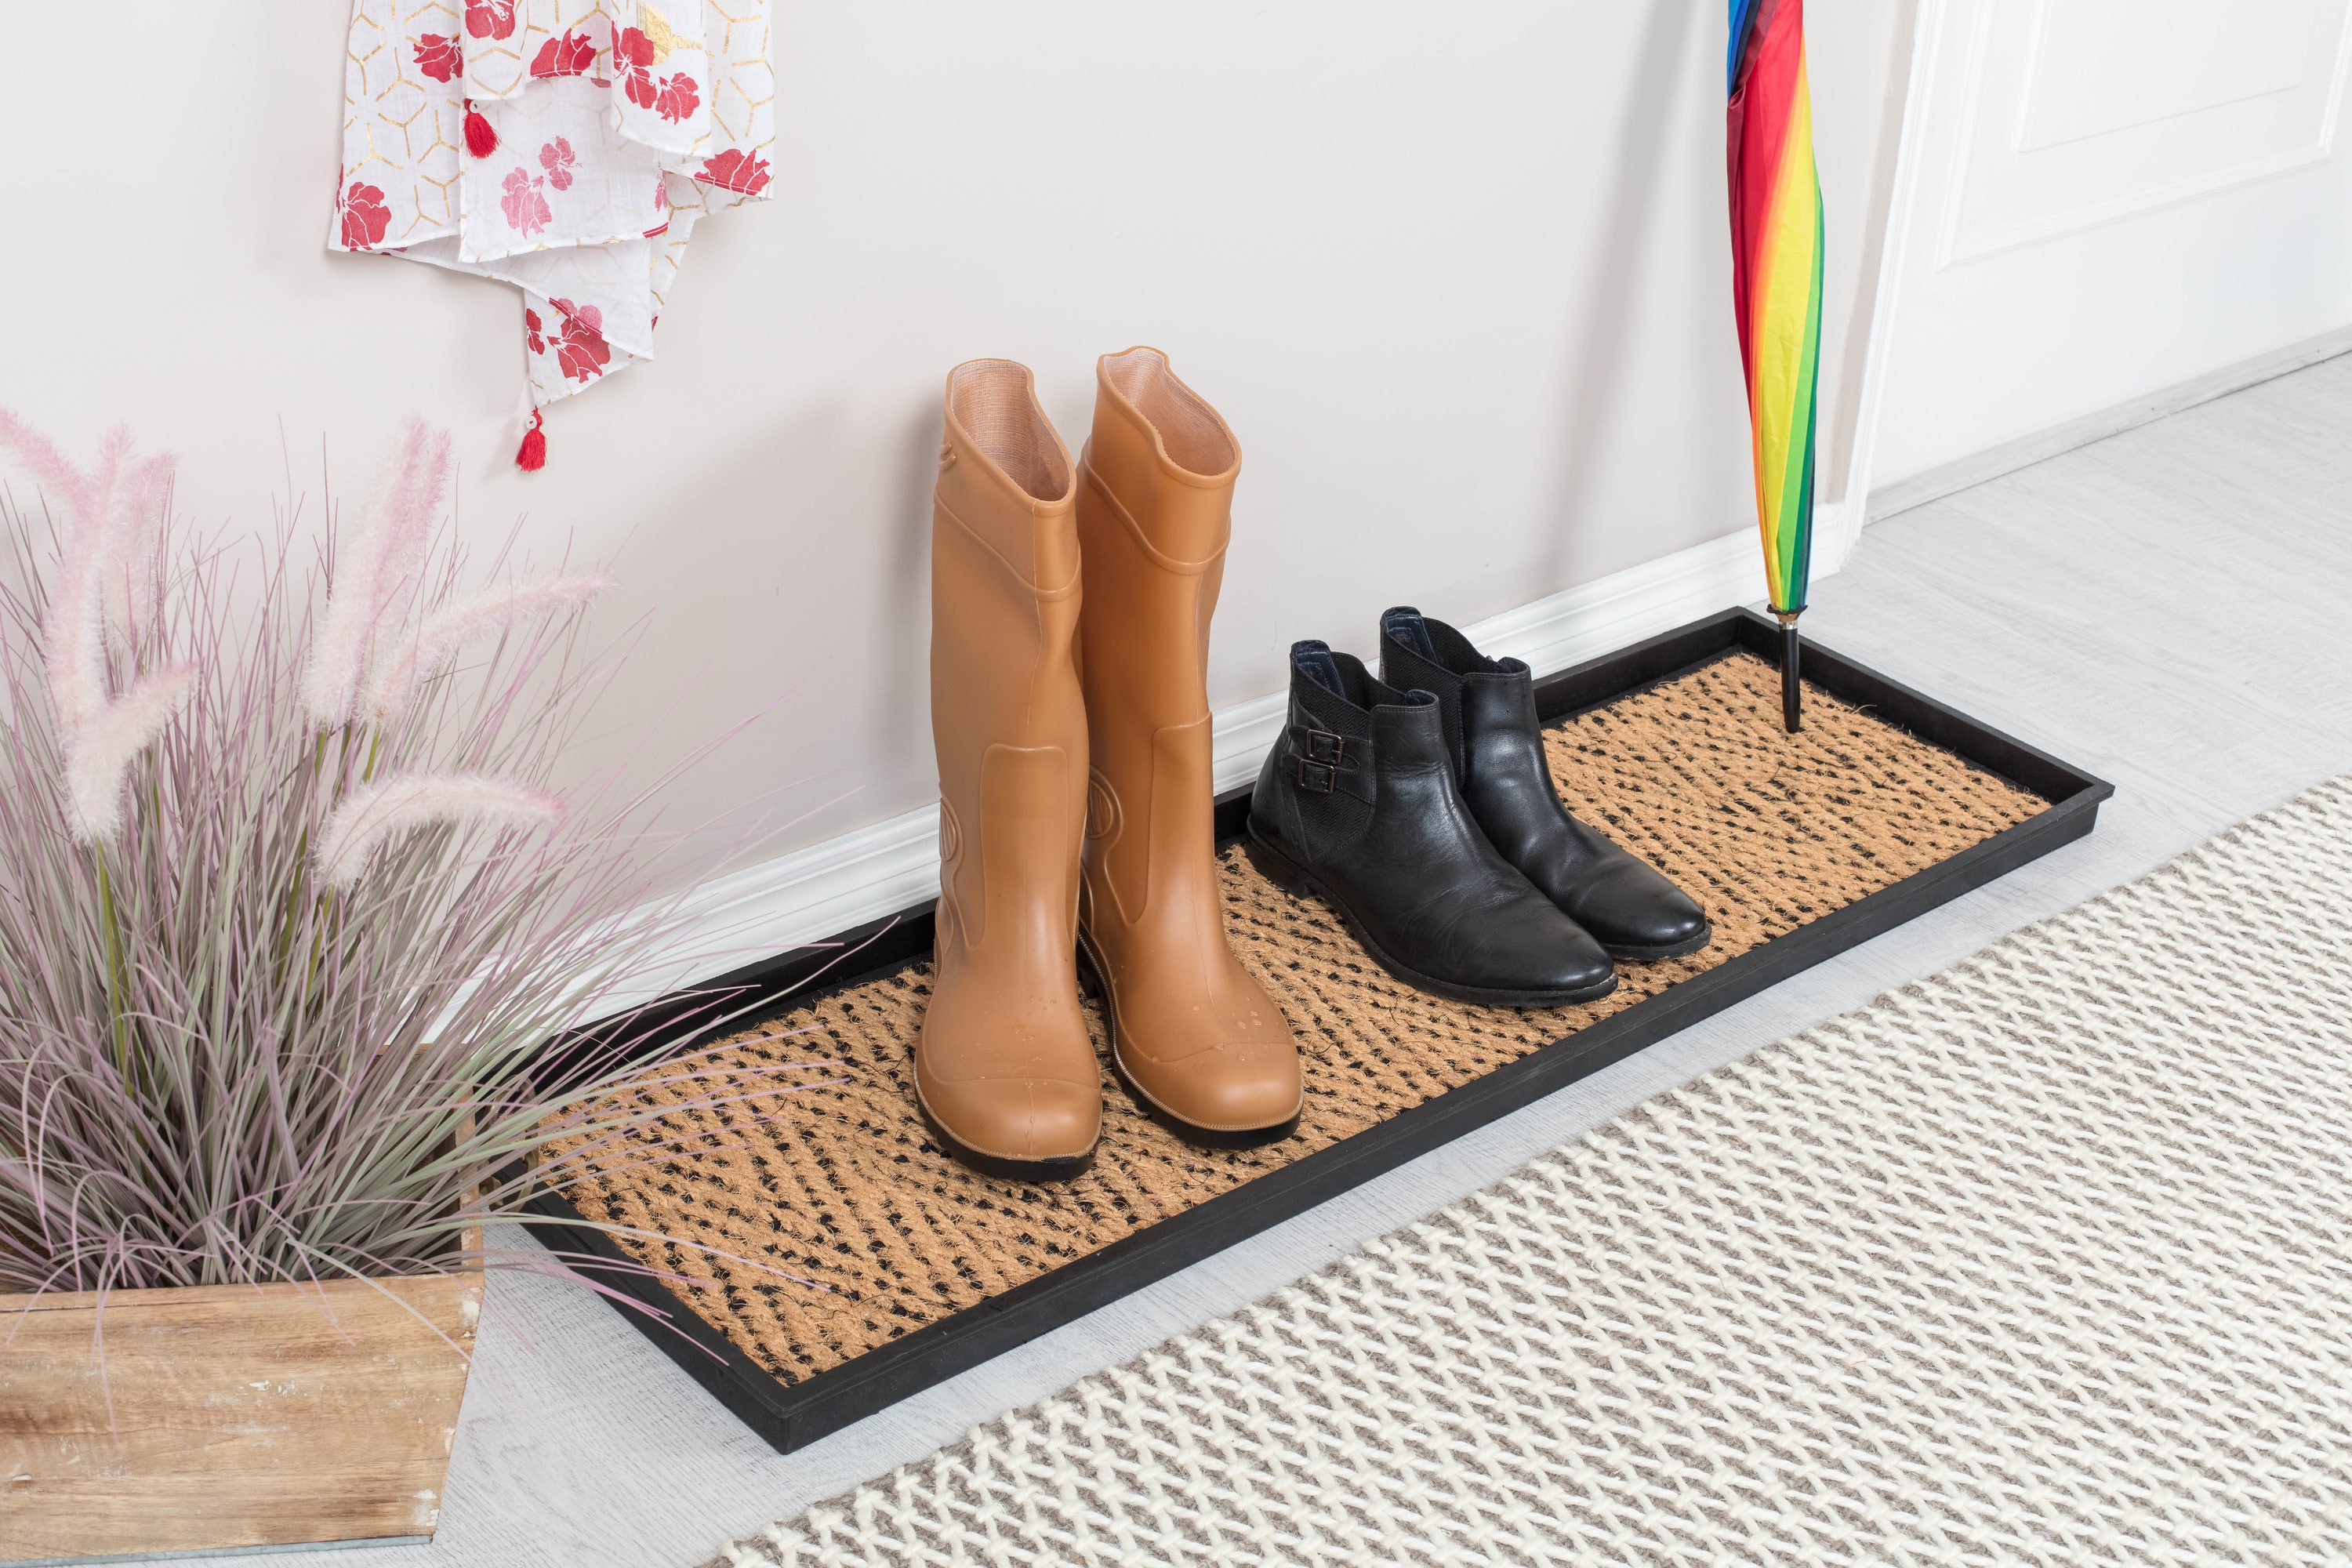 Superio 34 Decorative Rubber Boot & Shoe Tray